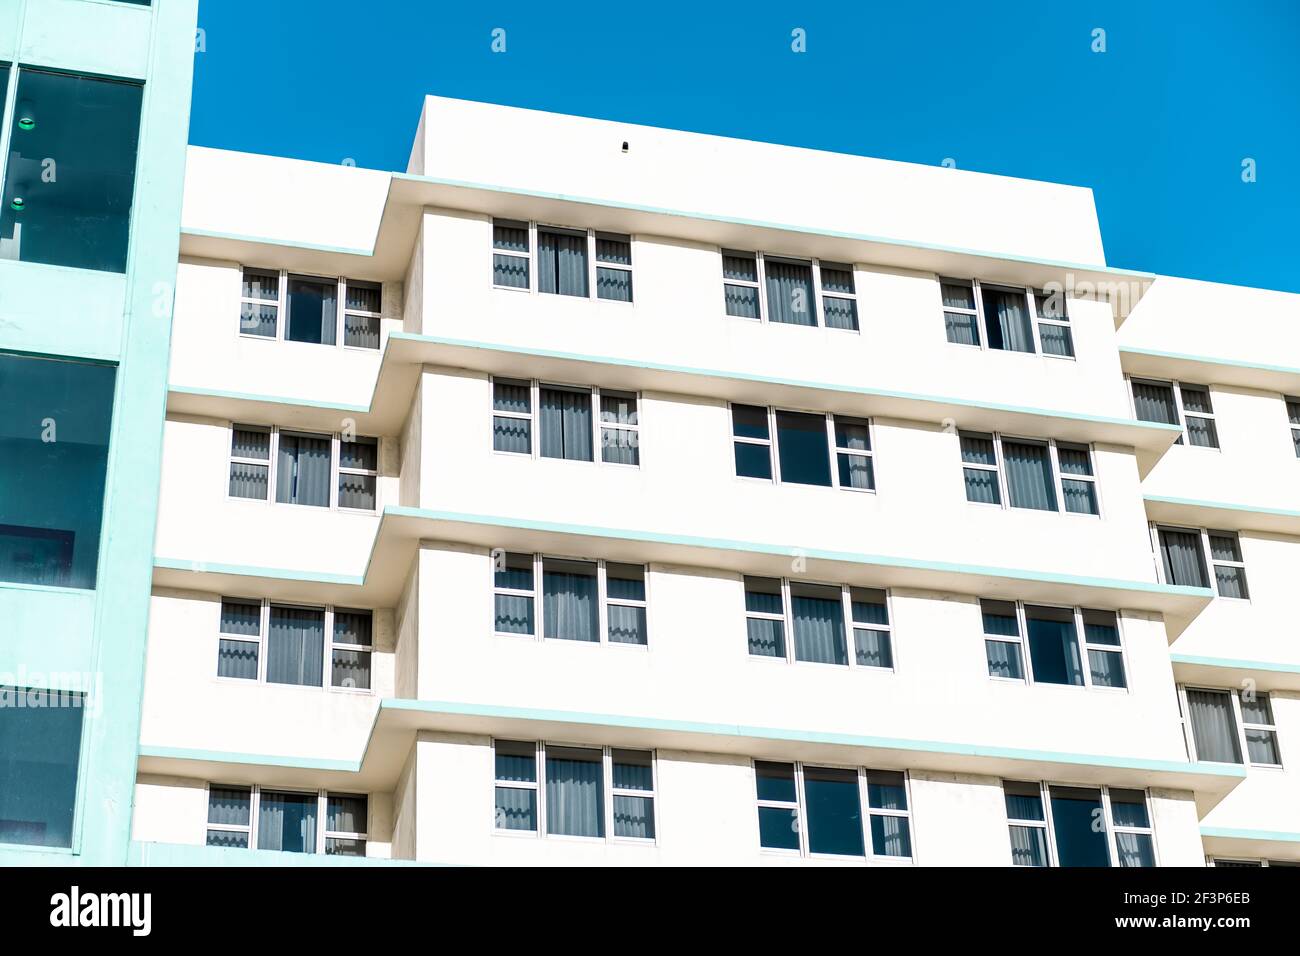 Abstrait minimalisme minimaliste architecture extérieure façade de blanc art déco turquoise sarcelle coloré rétro hôtel résidentiel Banque D'Images